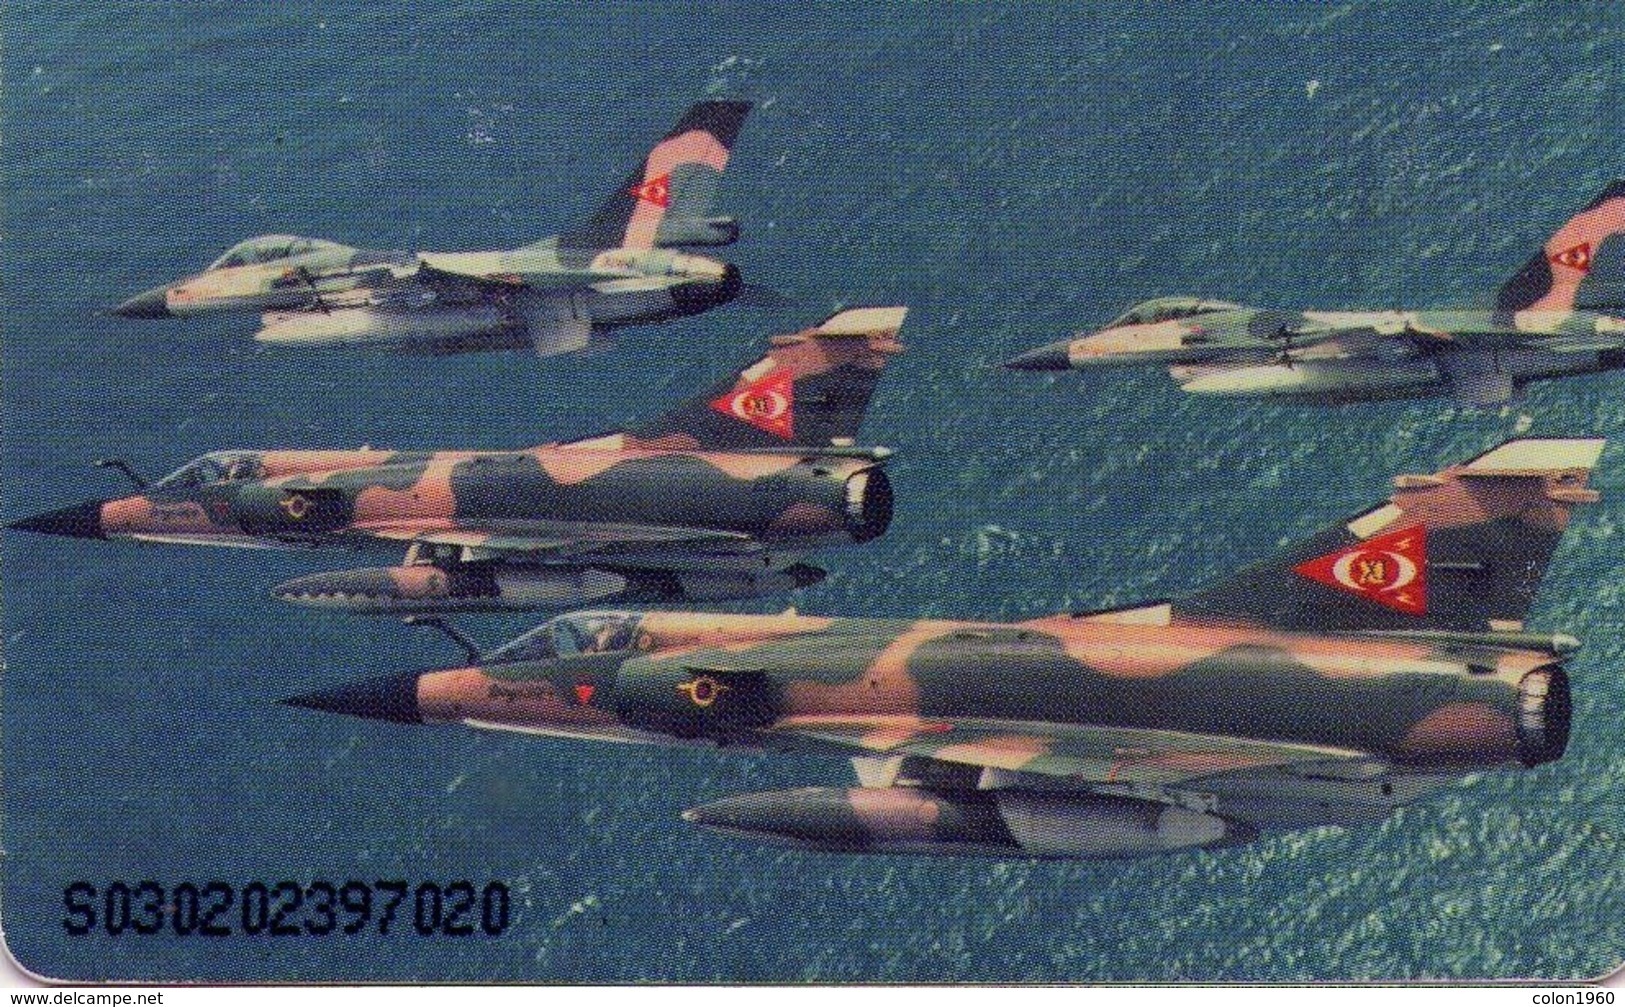 VENEZUELA. CAN2-0771. GUARDIANES DEL AIRE 2/8, MIRAGE Y F-16. 03/02. (422) - Avions